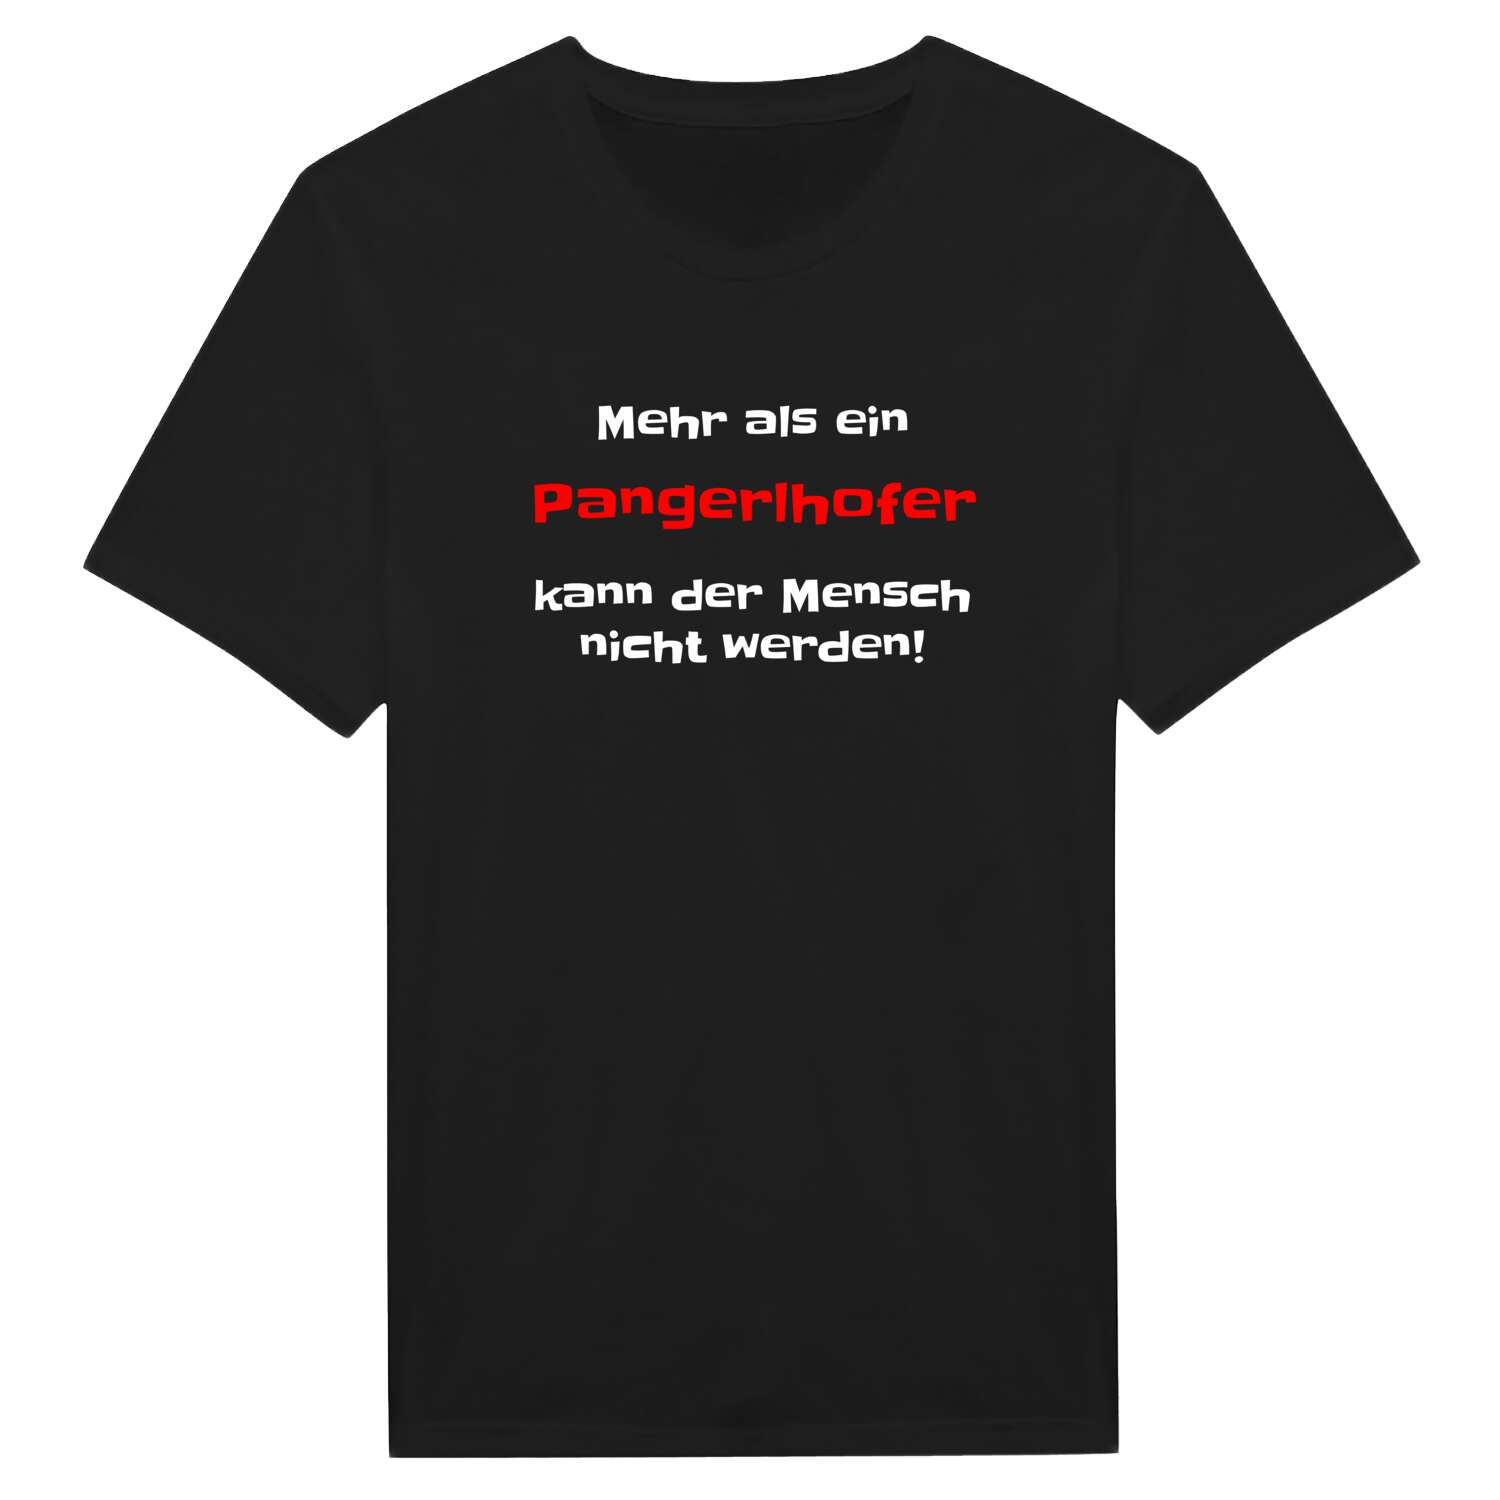 Pangerlhof T-Shirt »Mehr als ein«